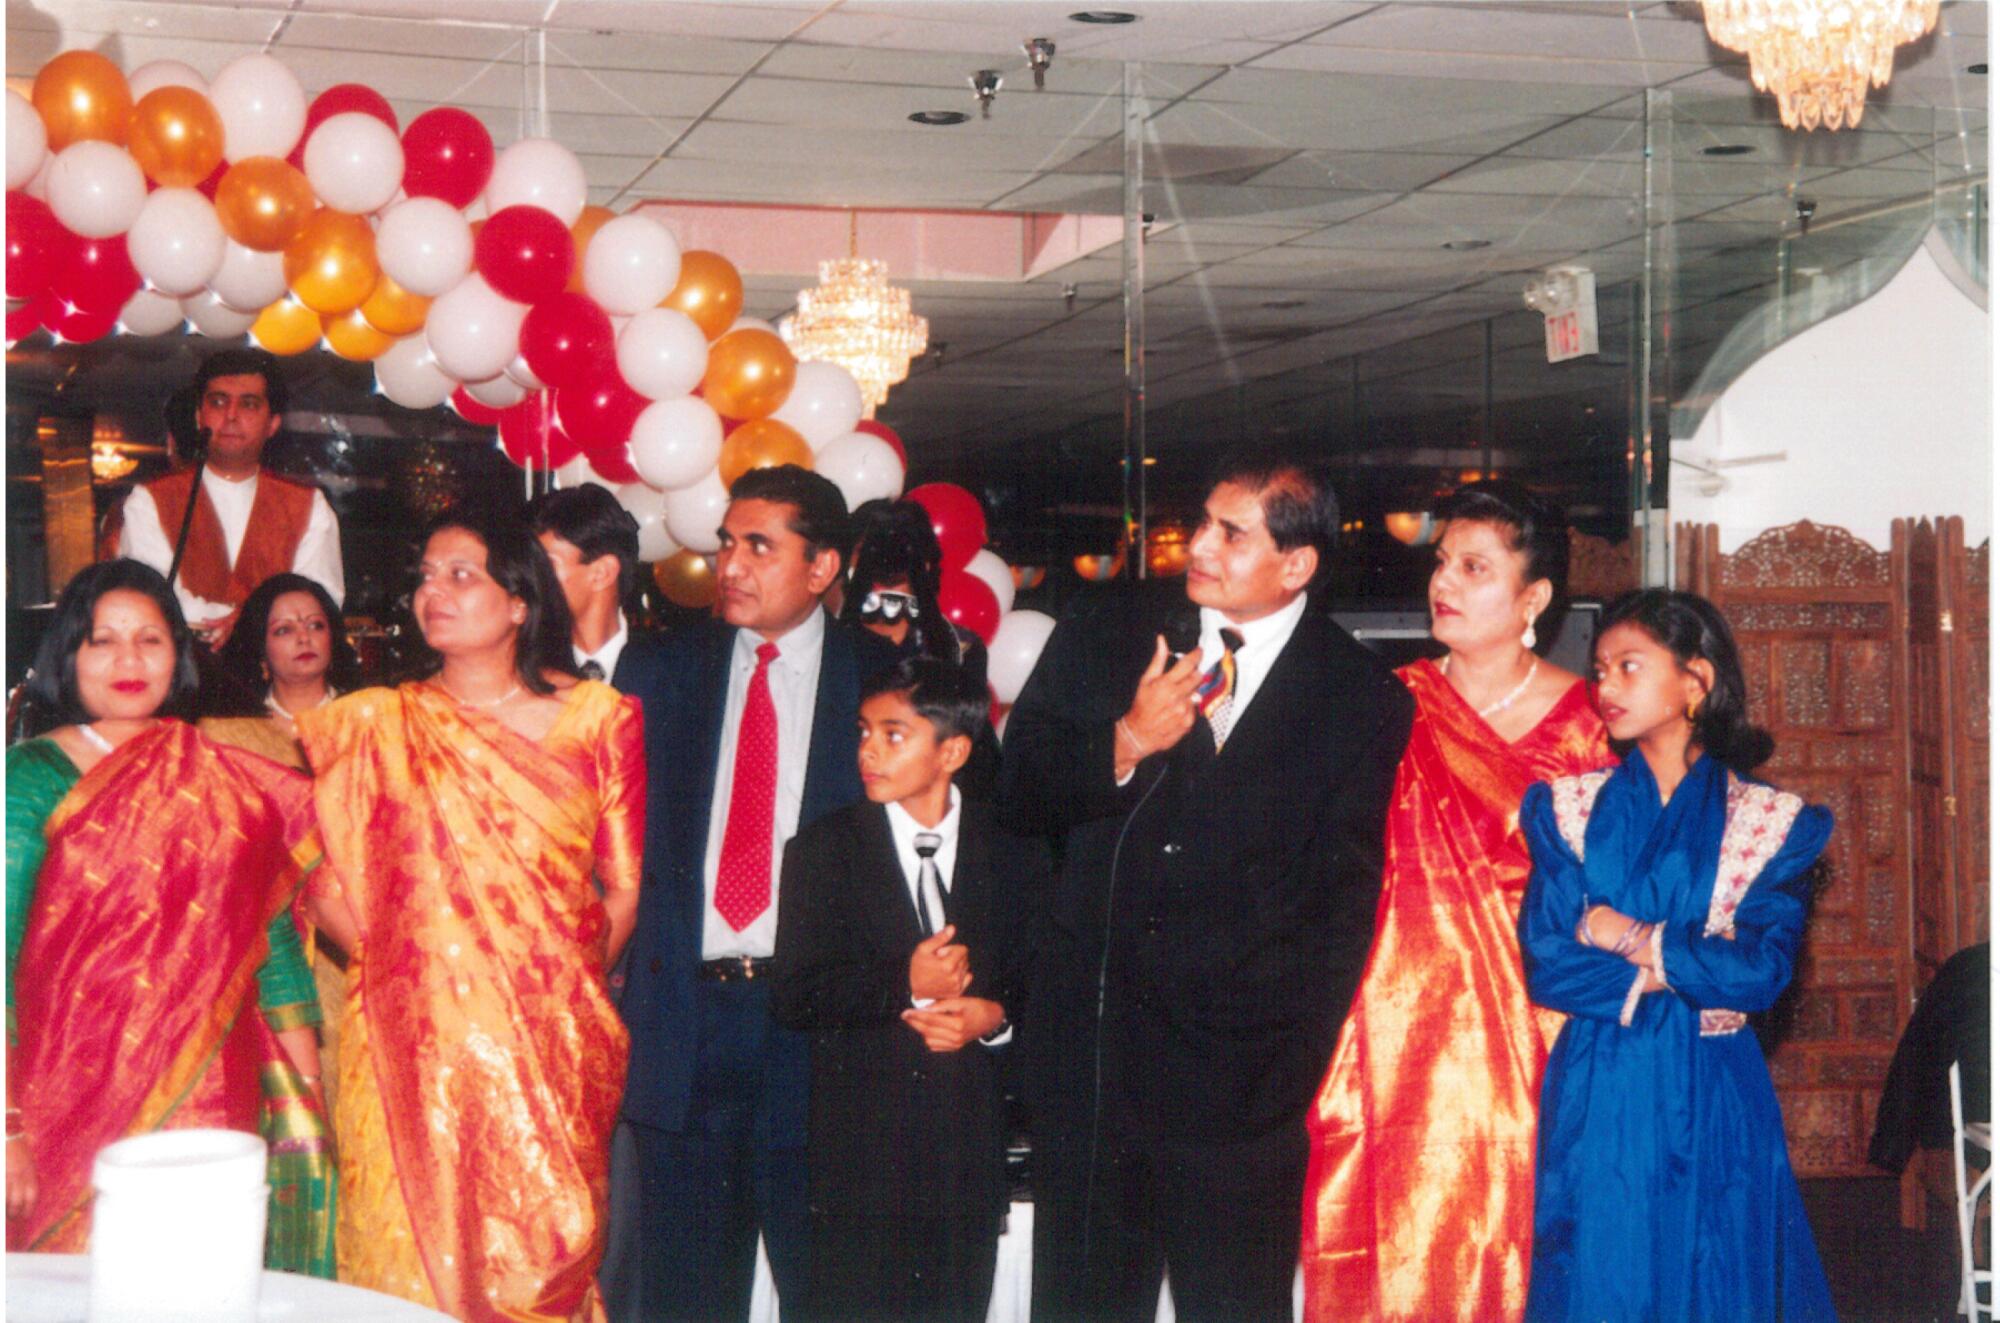 Haresh Jogani, left, and Shashikant Jogani, right, join family members at a celebration.